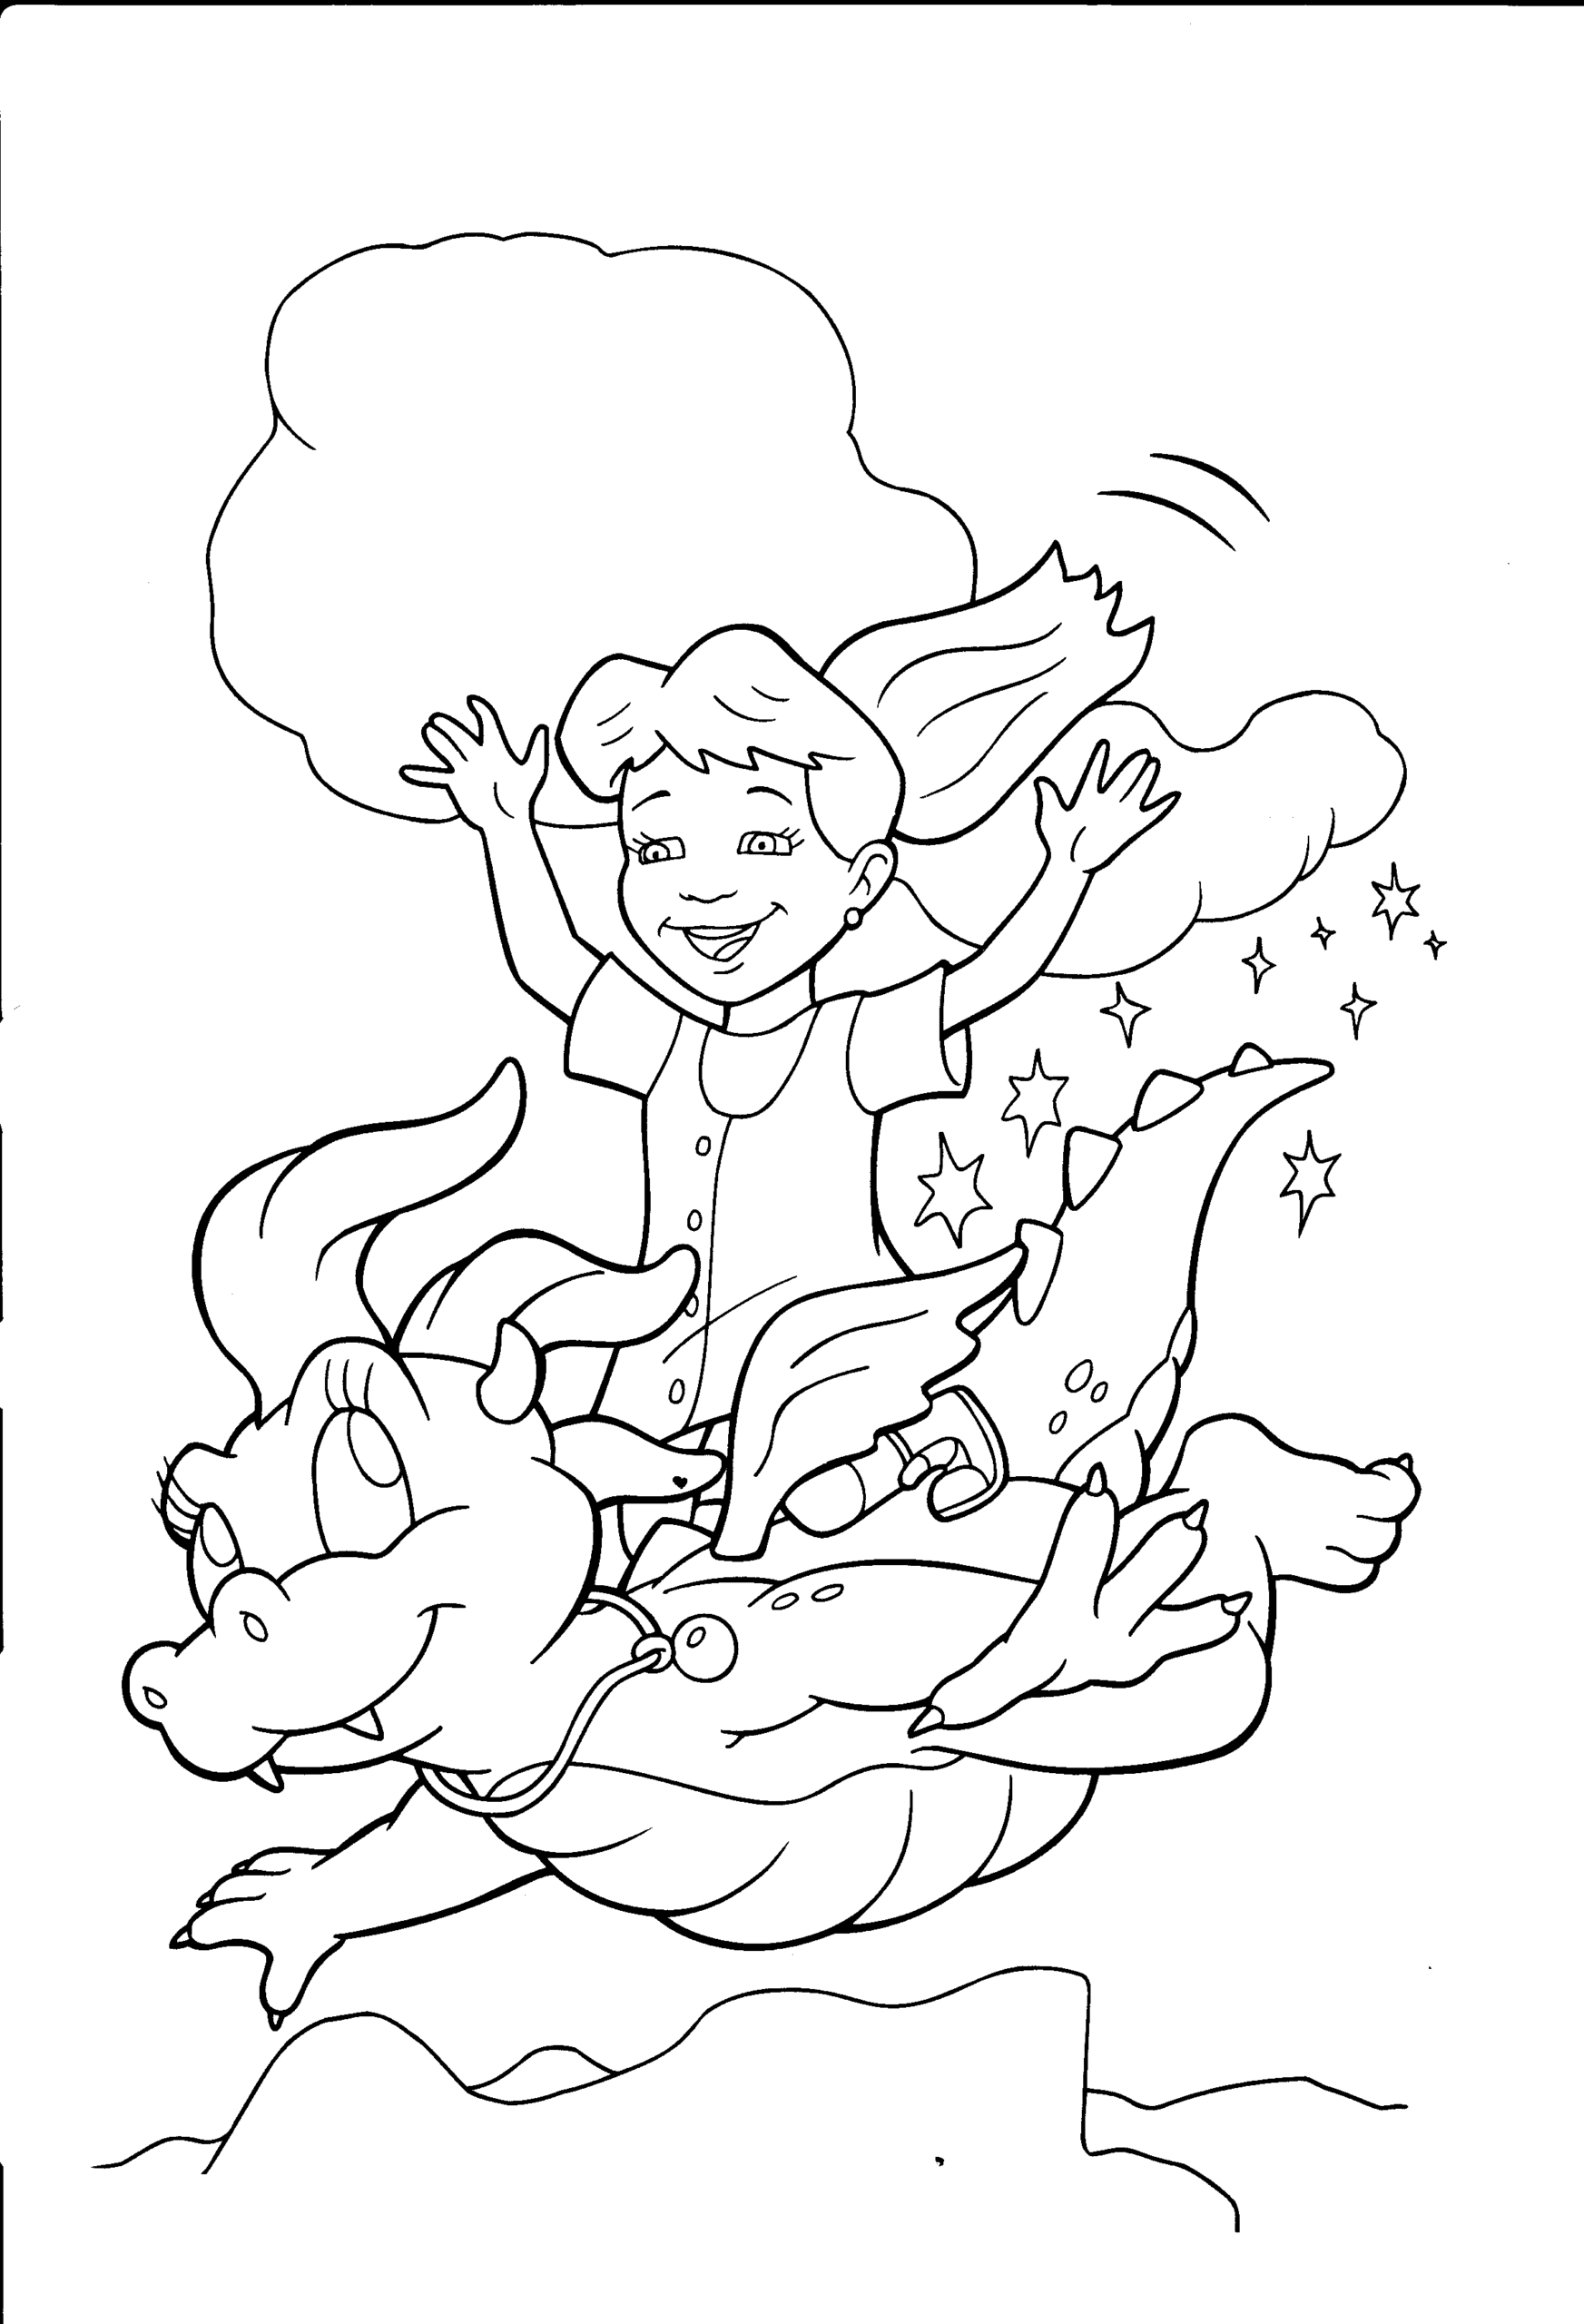 Kolorowanka smok mała samica leci wśród chmur pozostawiając gwiazdki z dziewczynką na grzbiecie